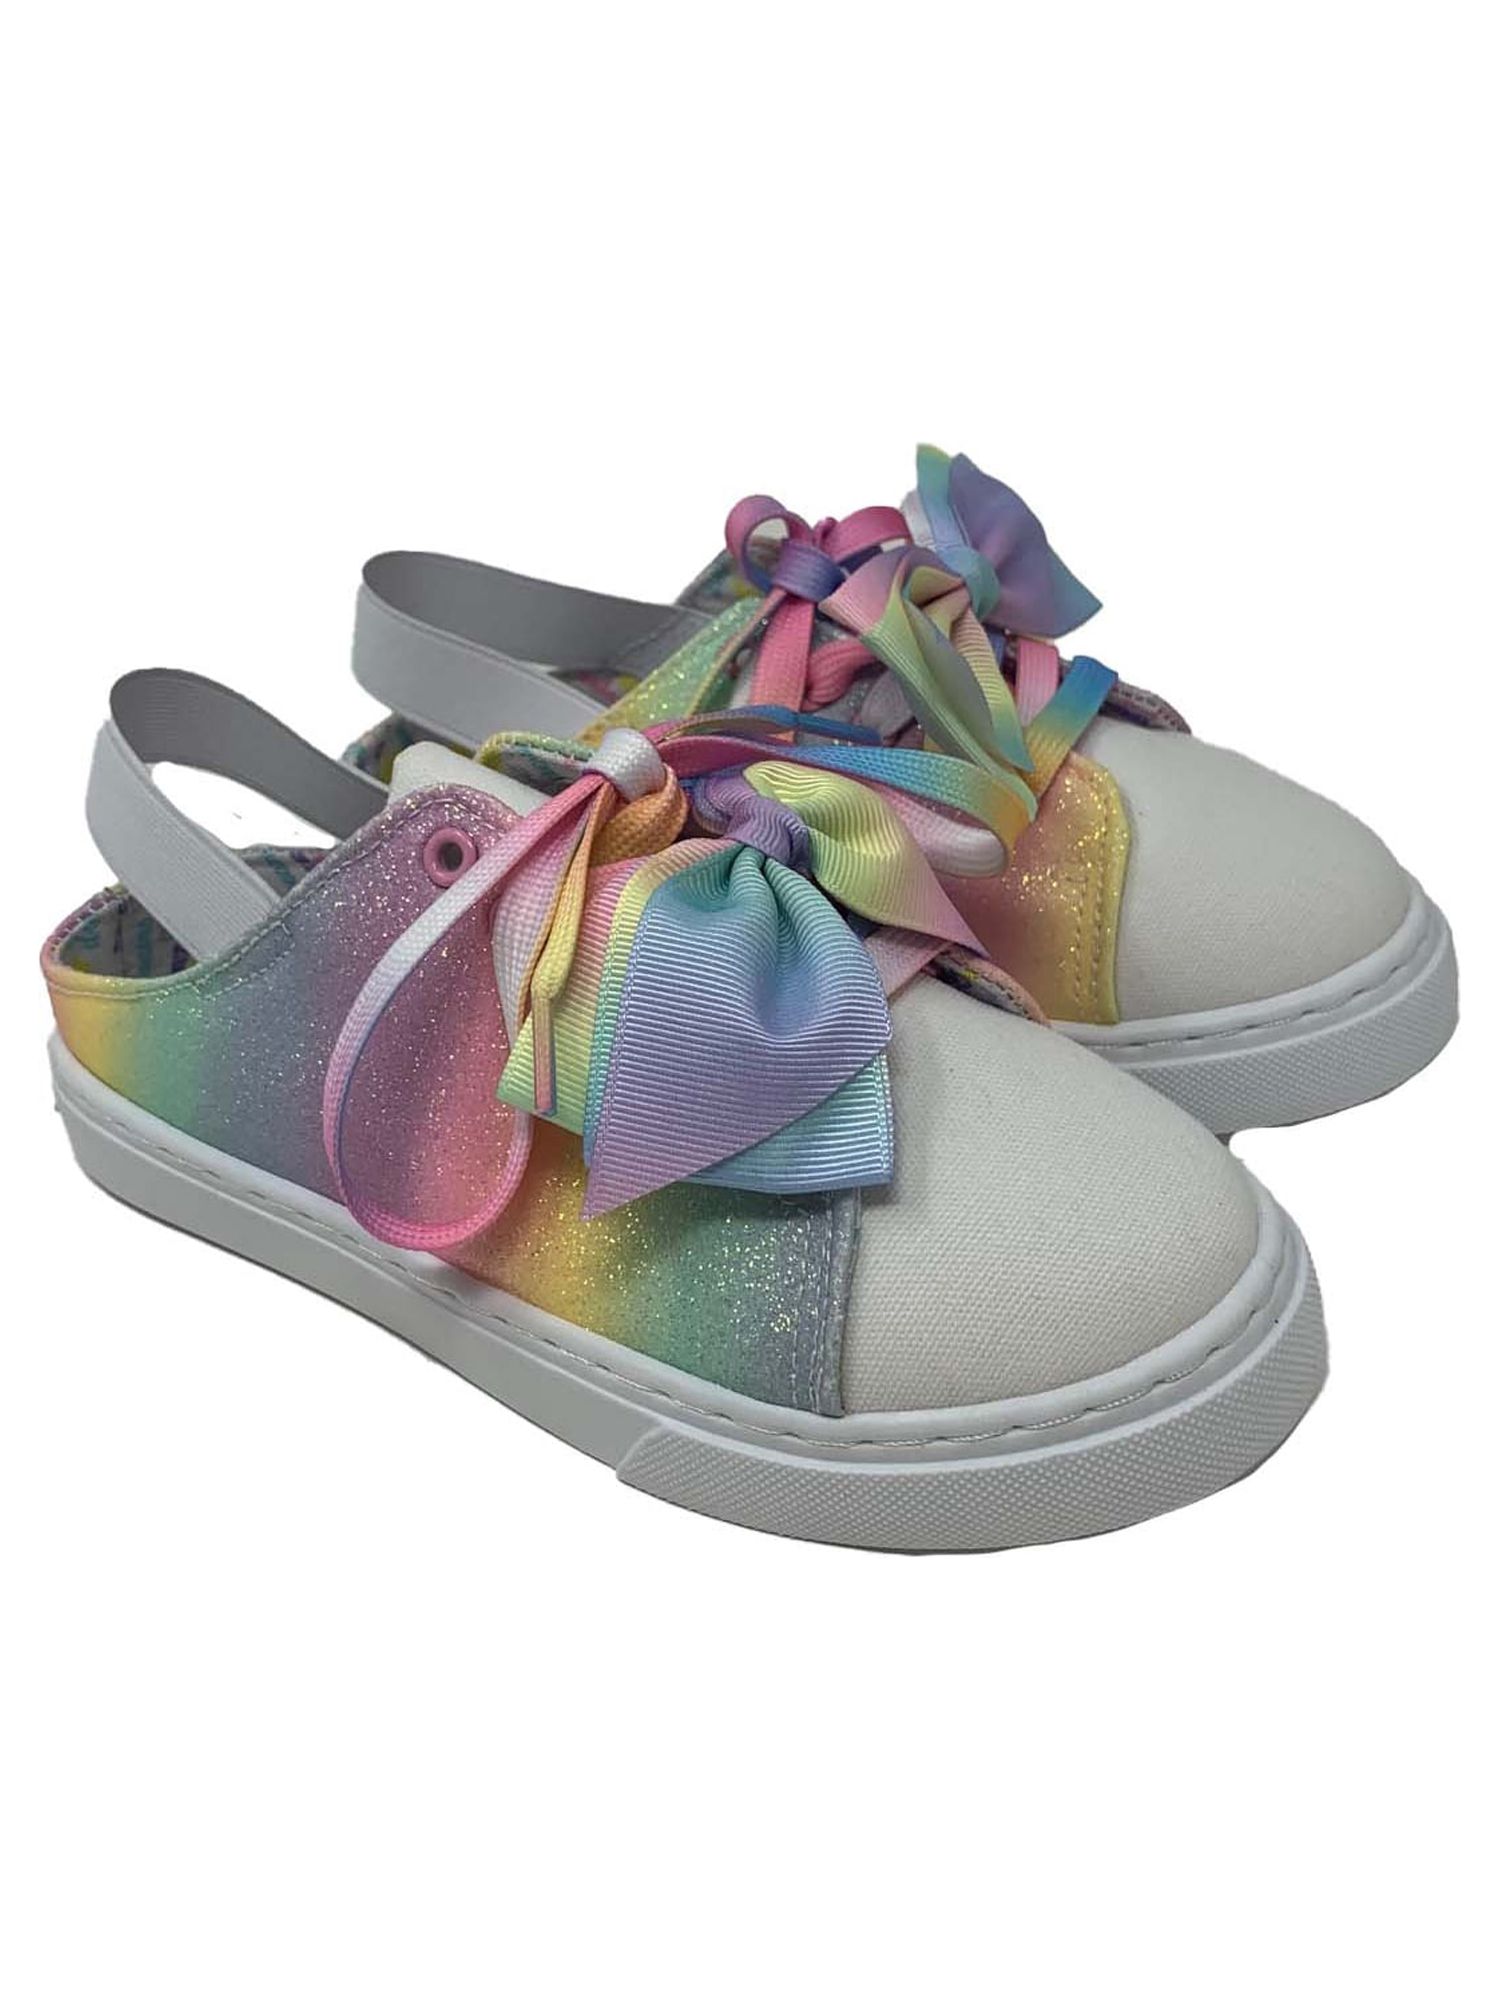 Toddler Jojo Siwa Glitter Sling Back Low Top Sneaker (Toddler Girls) - image 1 of 6